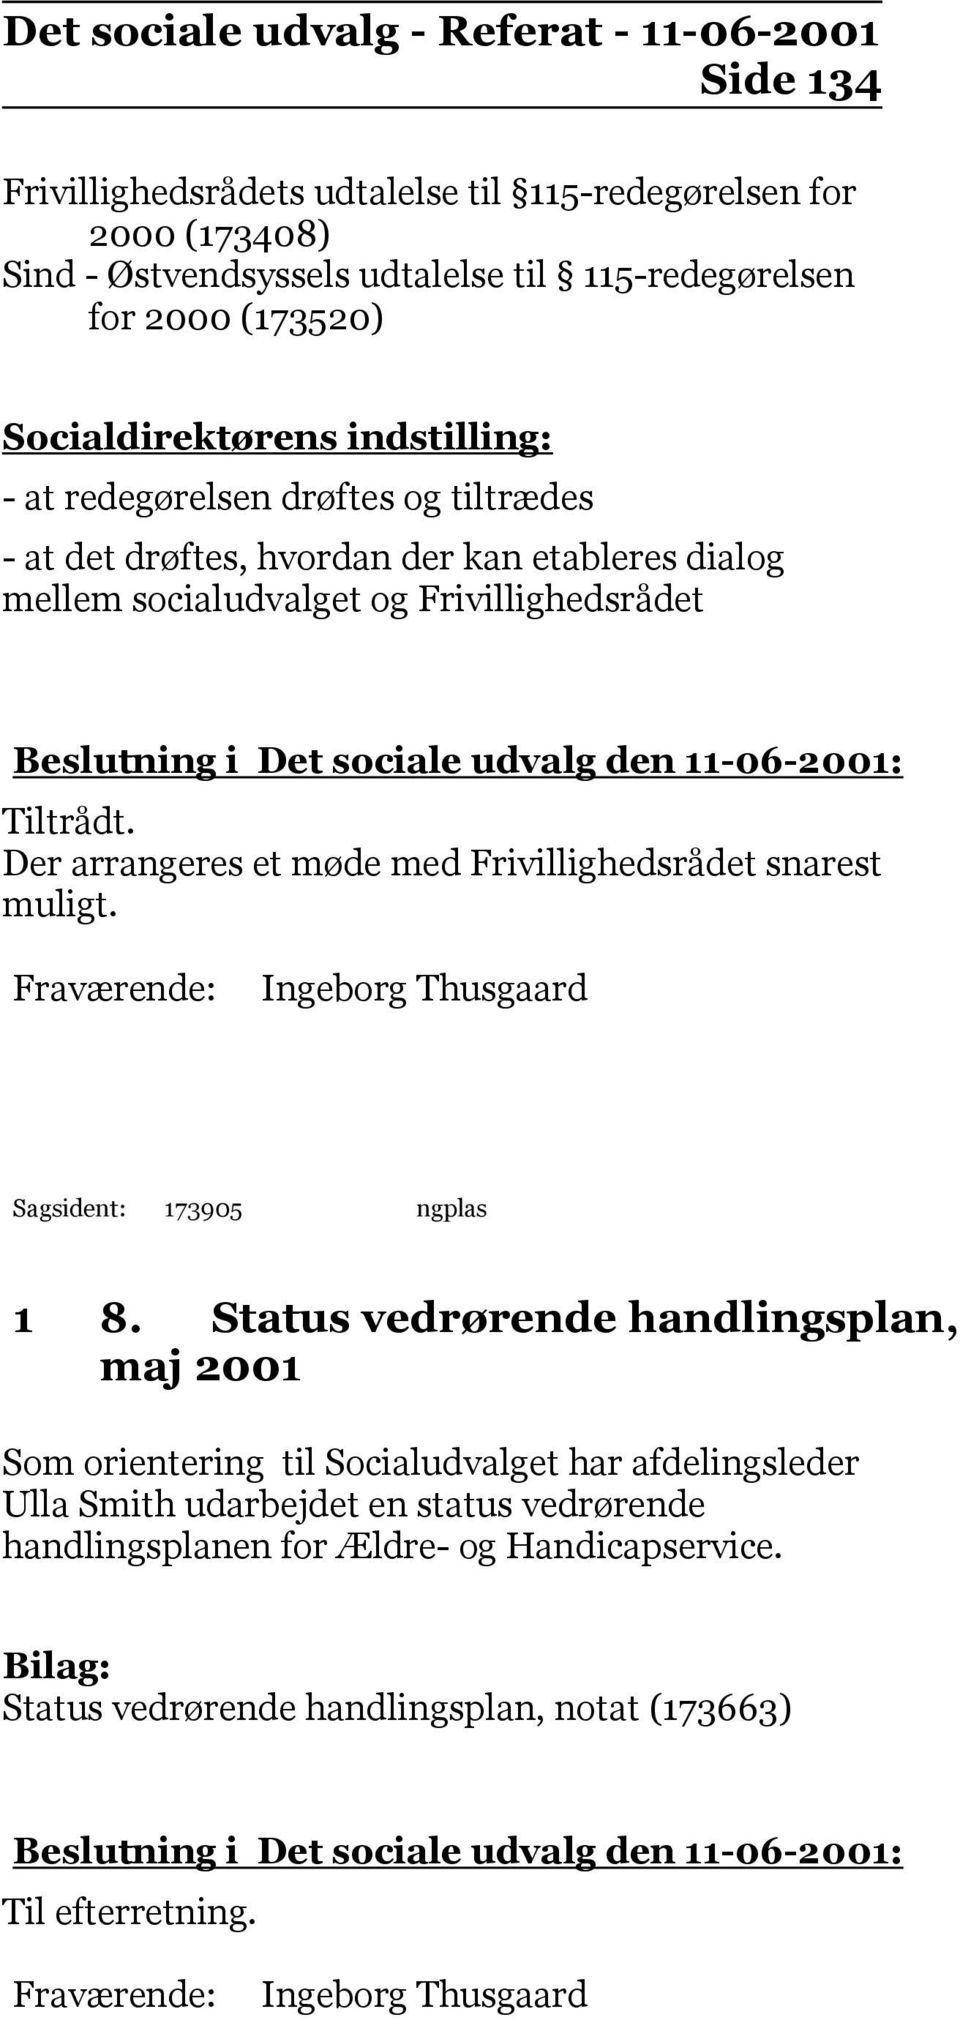 Der arrangeres et møde med Frivillighedsrådet snarest muligt. Ingeborg Thusgaard Sagsident: 173905 ngplas 1 8.